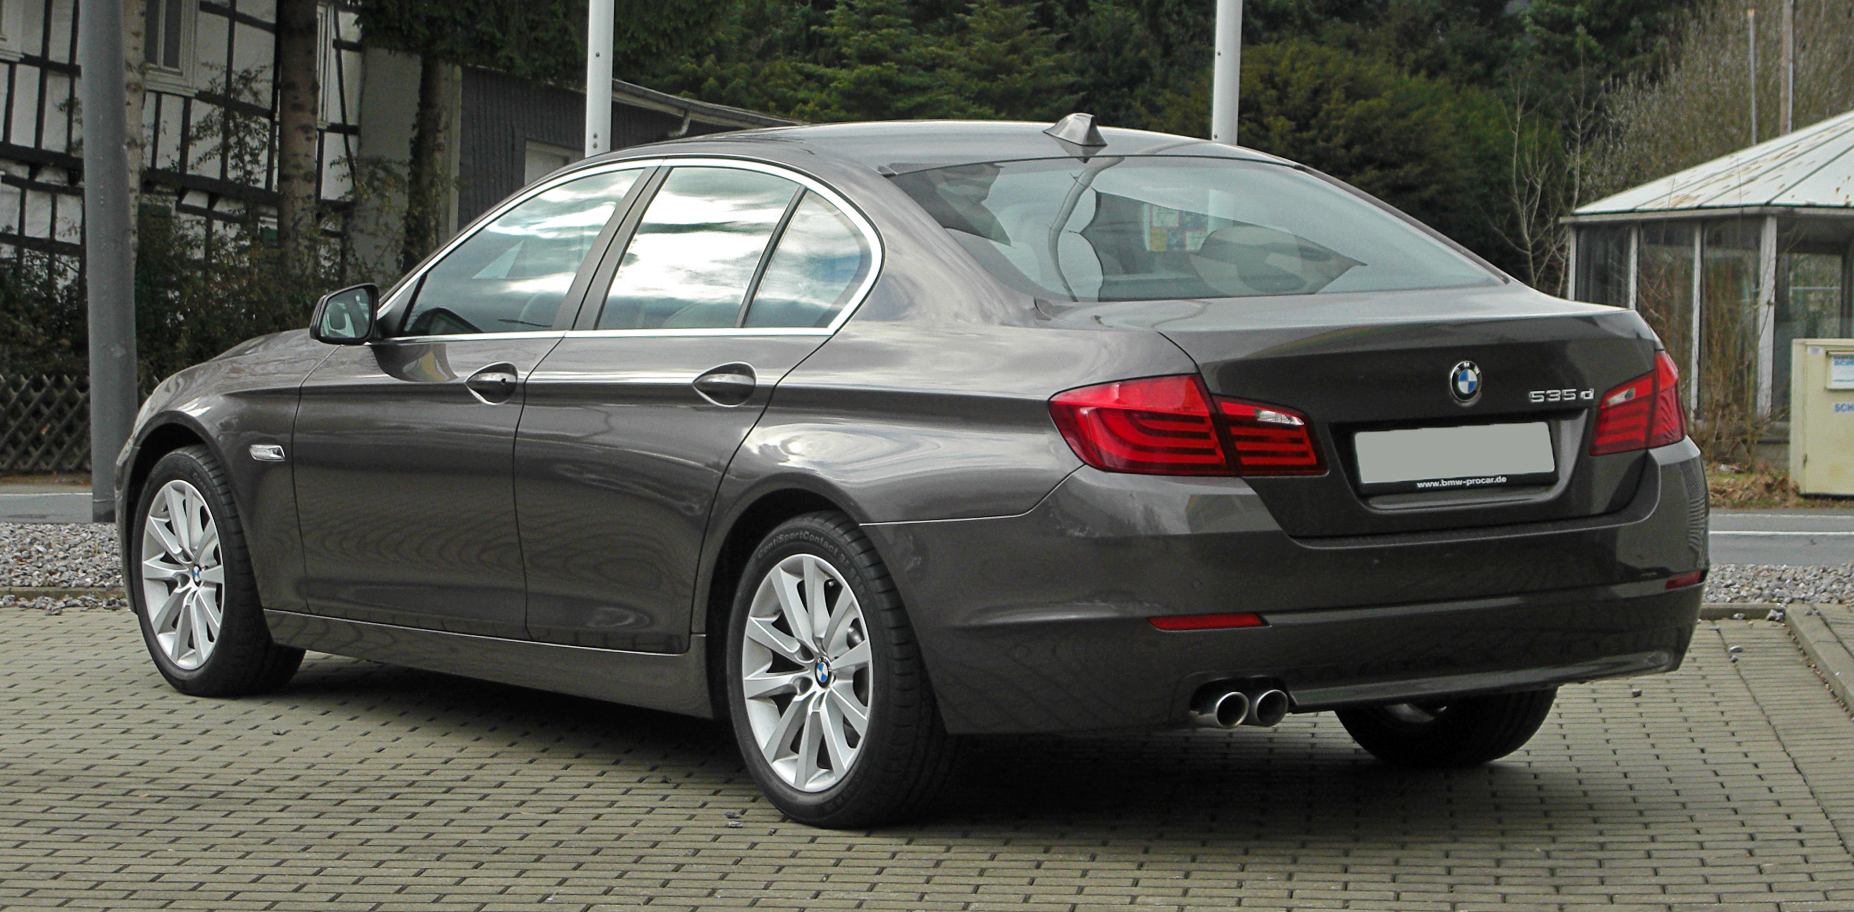 File:BMW 535d (F10) â€“ Heckansicht, 13. MÃ¤rz 2011, Wuppertal